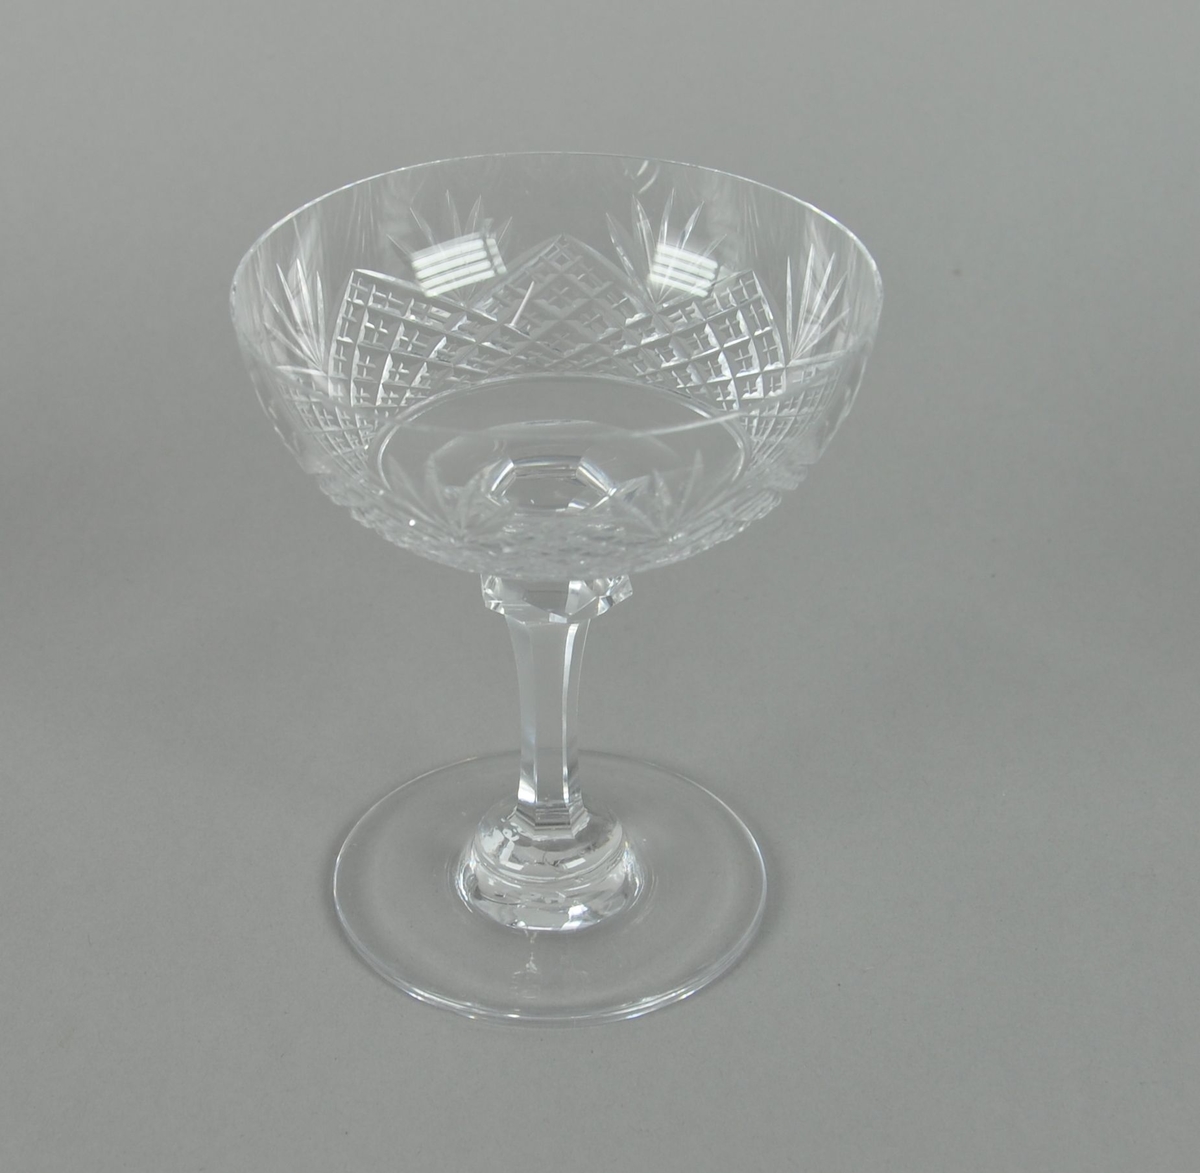 Sjampanjeglass av krystall. Glasset har rund form med sekskantet stett og rund sokkel. På utsiden av glasset er det innrisset dekor av kryssmønstre og palmetter.